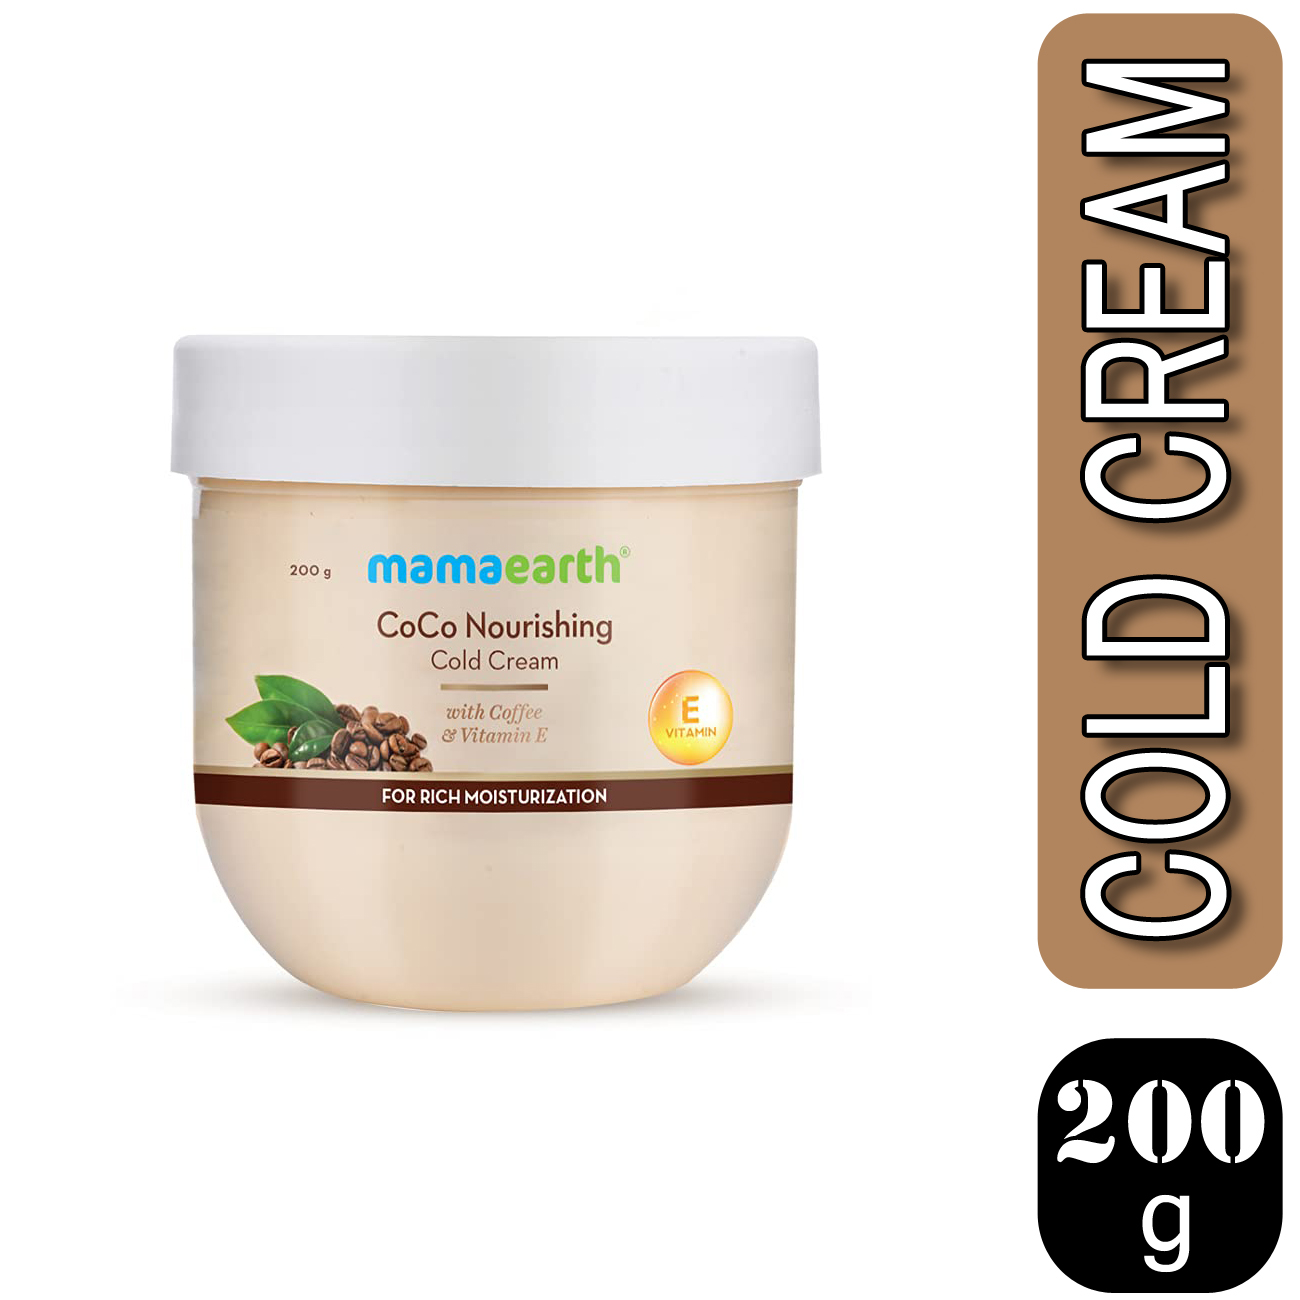 Mama Earth CoCo Nourishing Cold Cream 200g MRP 299/-